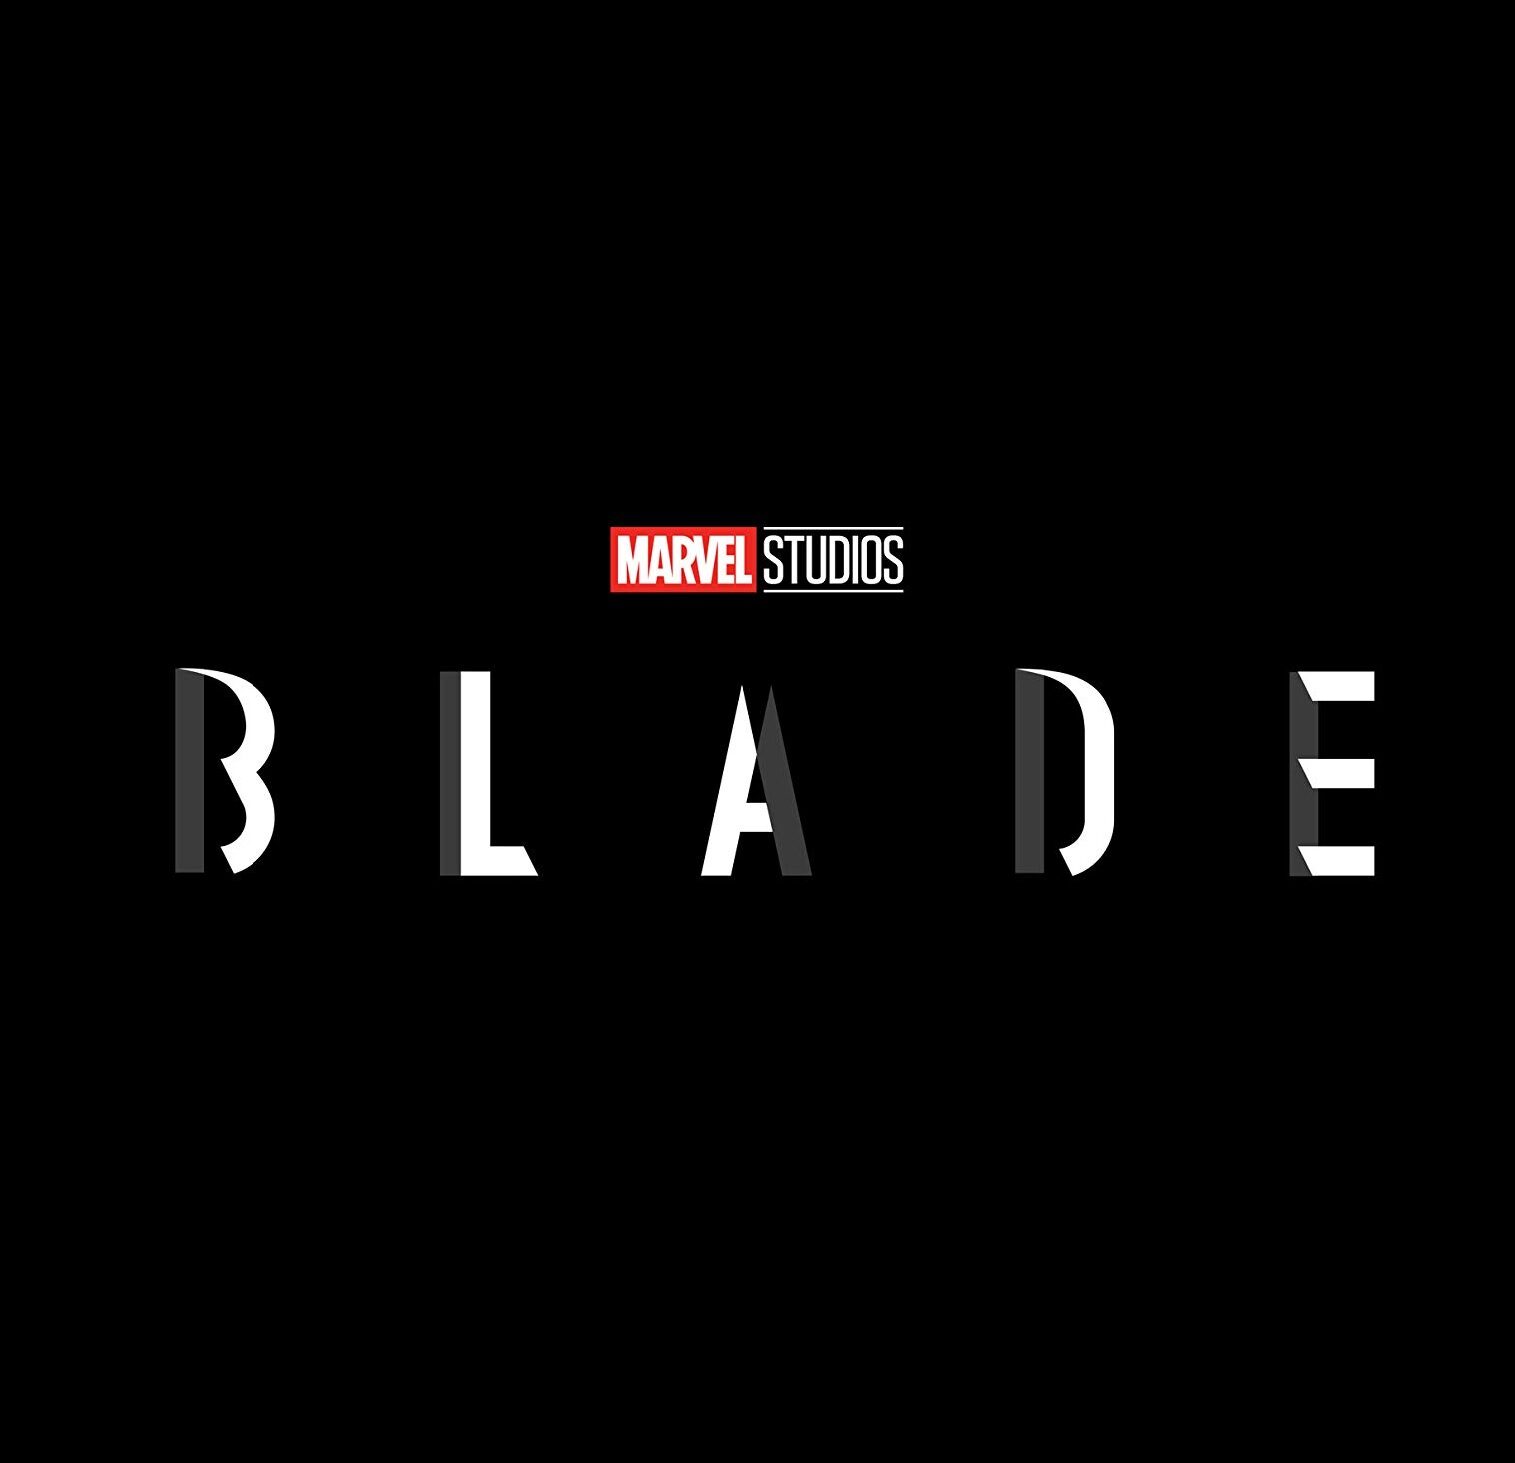 Blade reboot loses director